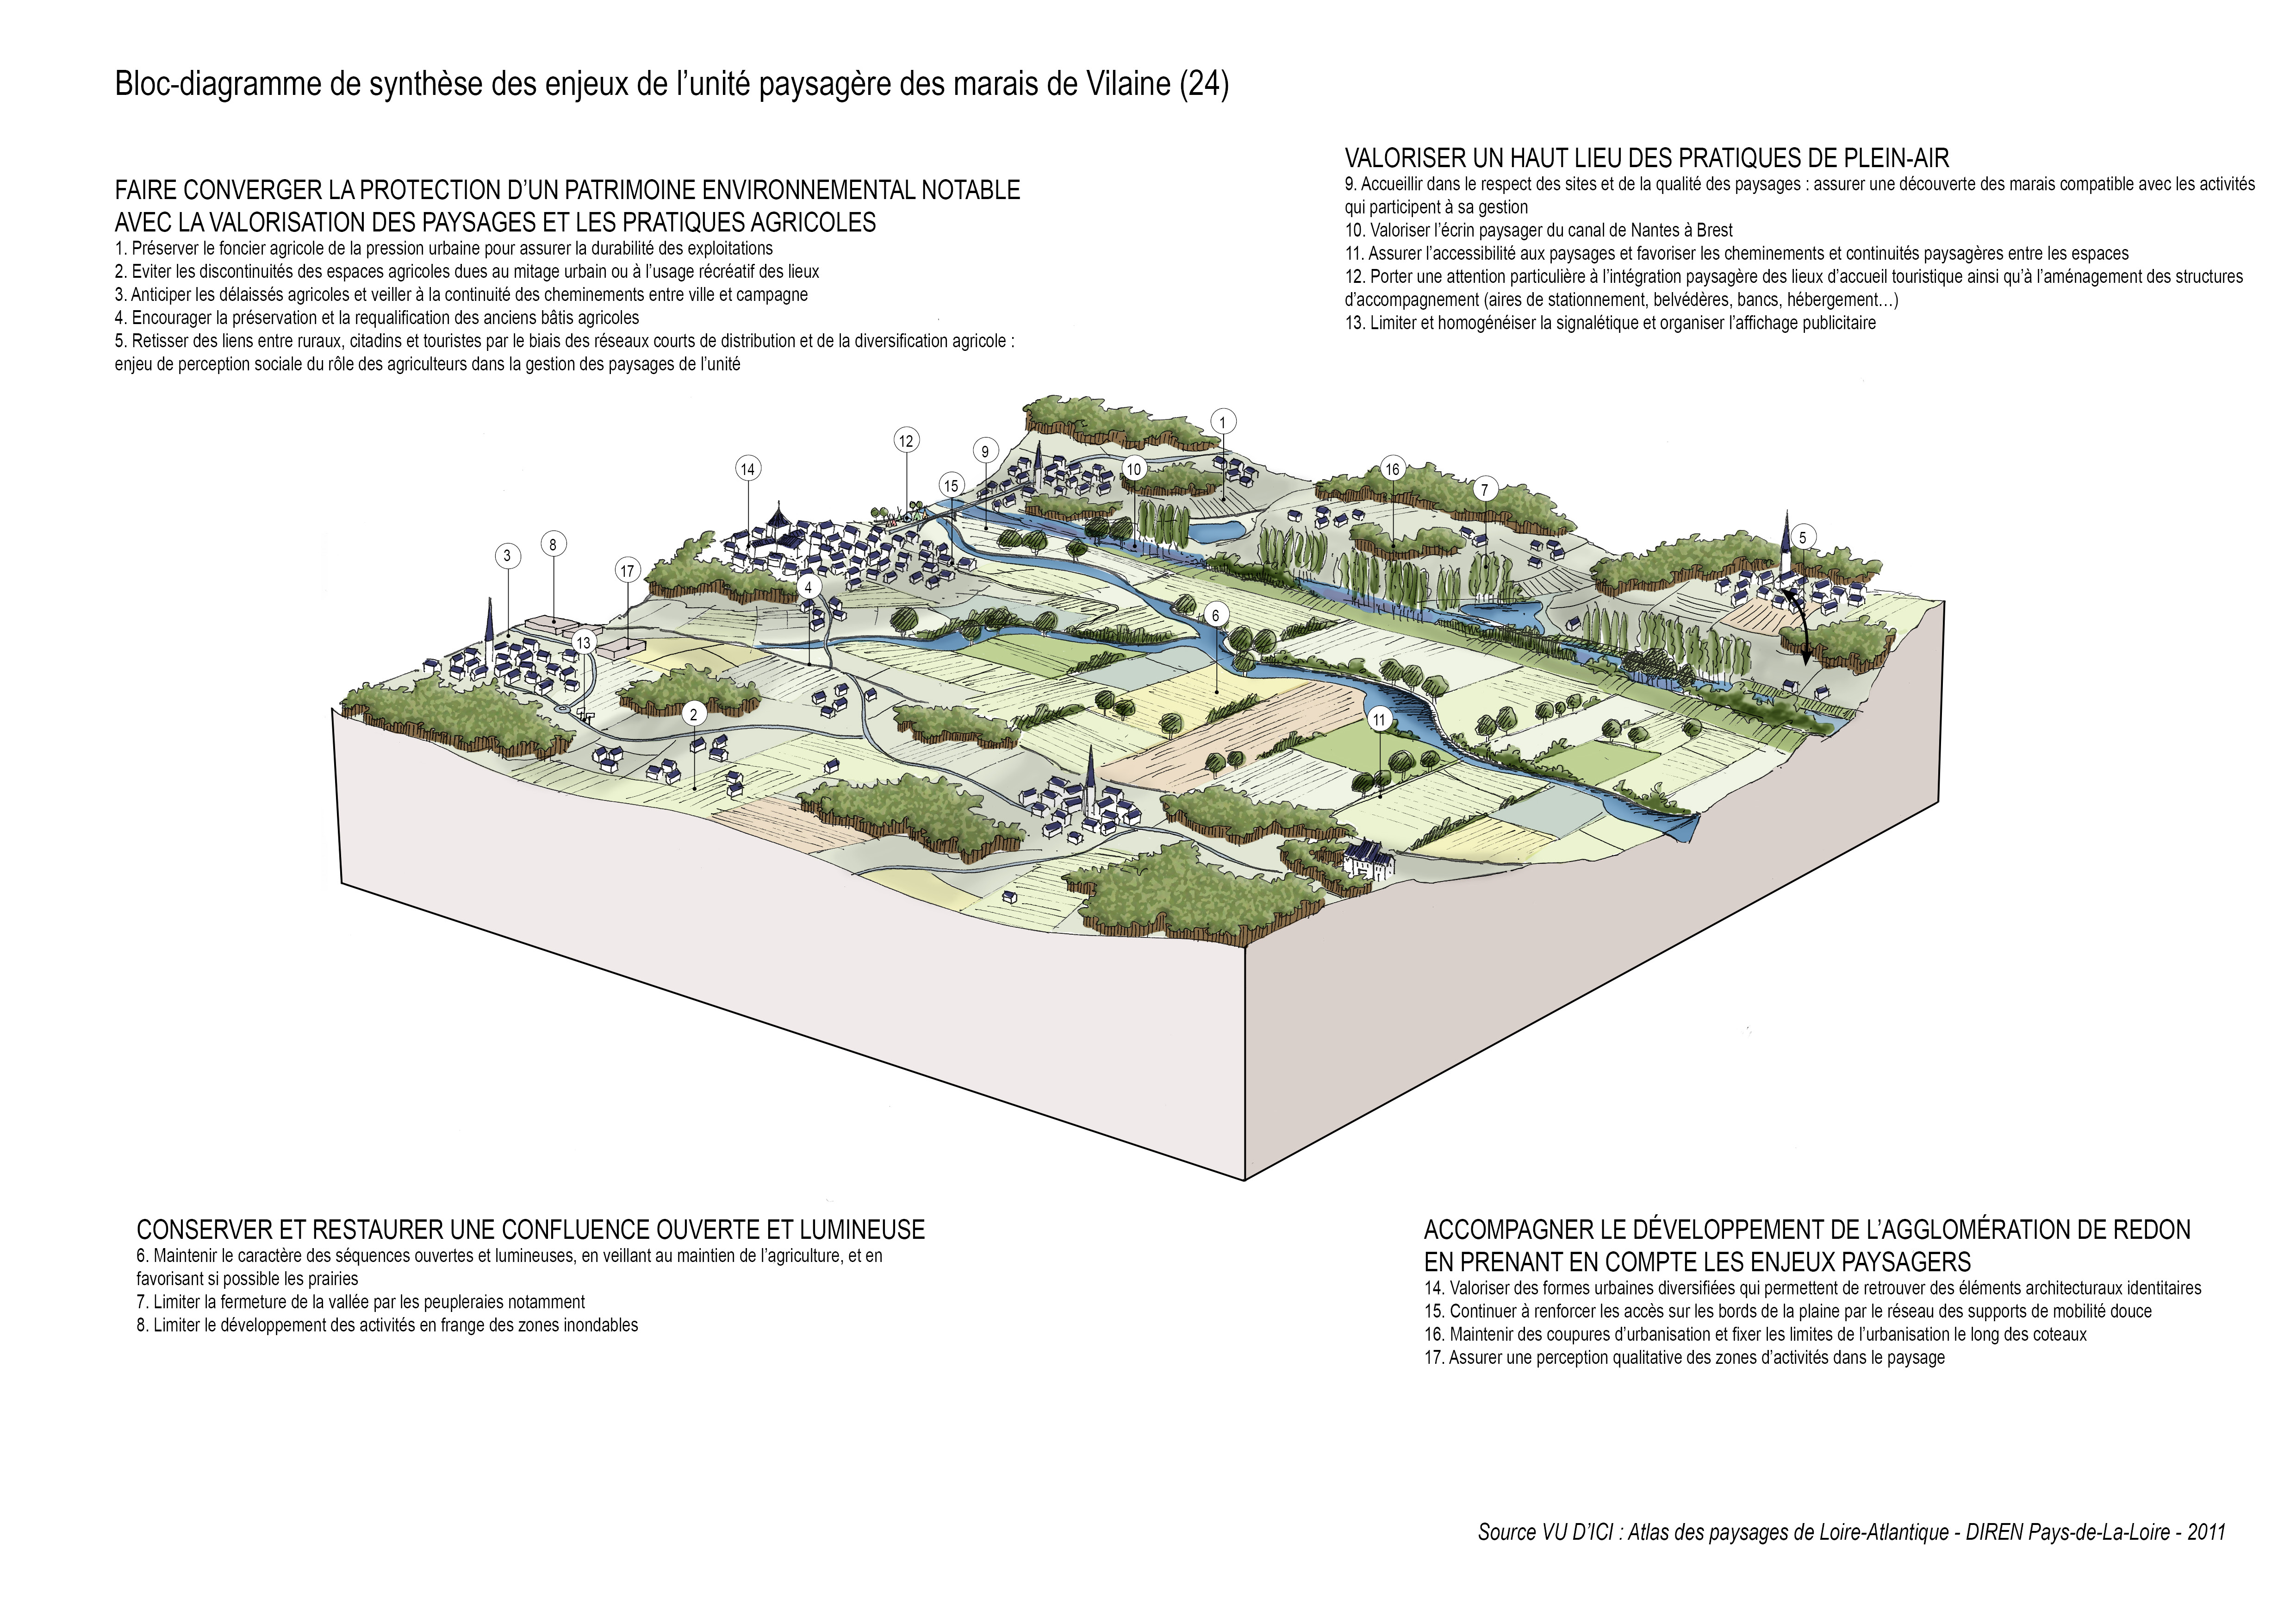 Bloc-diagramme de synthèse de l'unité paysagère des marais de Vilaine en grand format (nouvelle fenêtre)